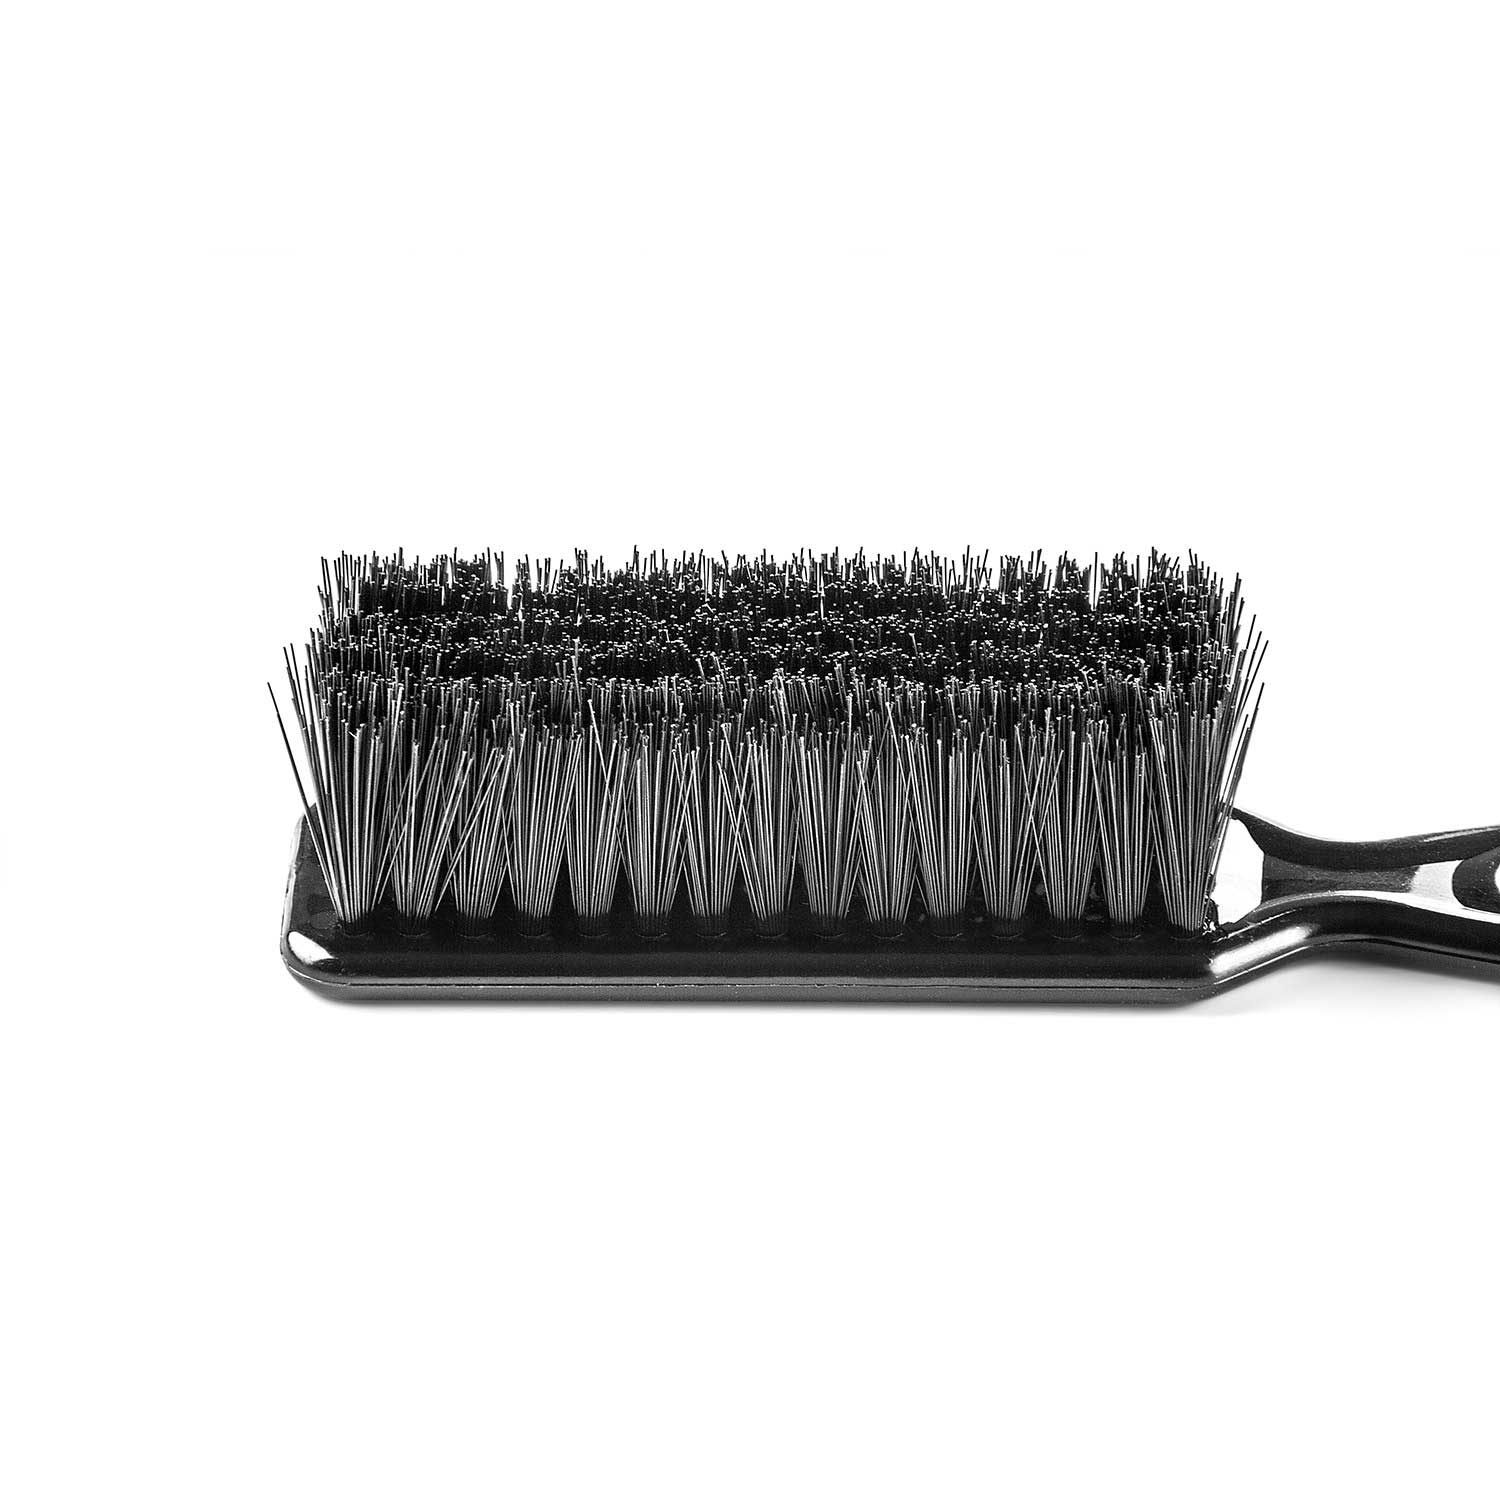  Friseurbürste Beardburys Fade Pro Brush - Spezialbürste für Überblendungen 1